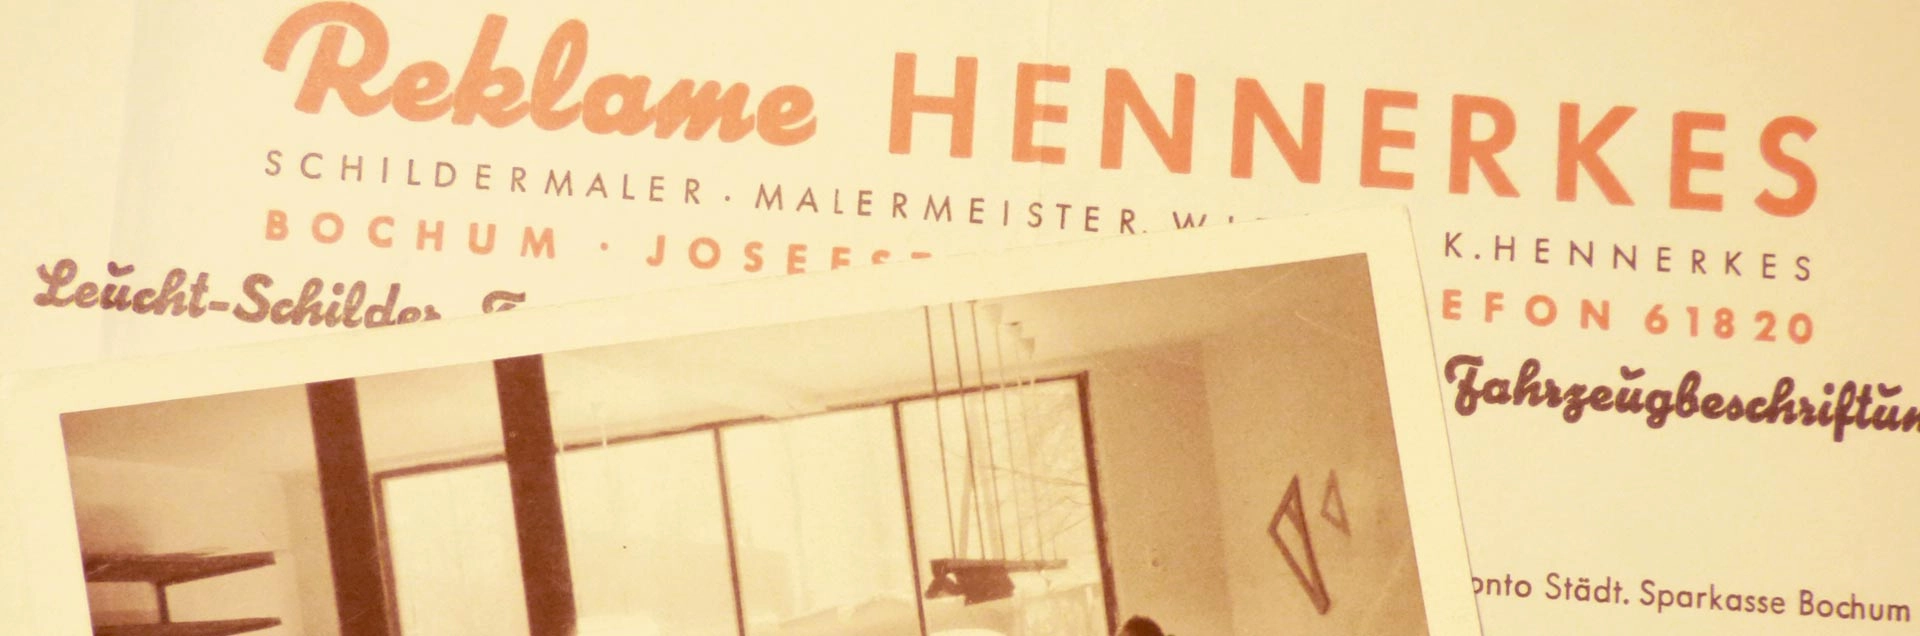 Reklame Hennerkes historische Dokumente und Schriften aus den 1950er Jahren